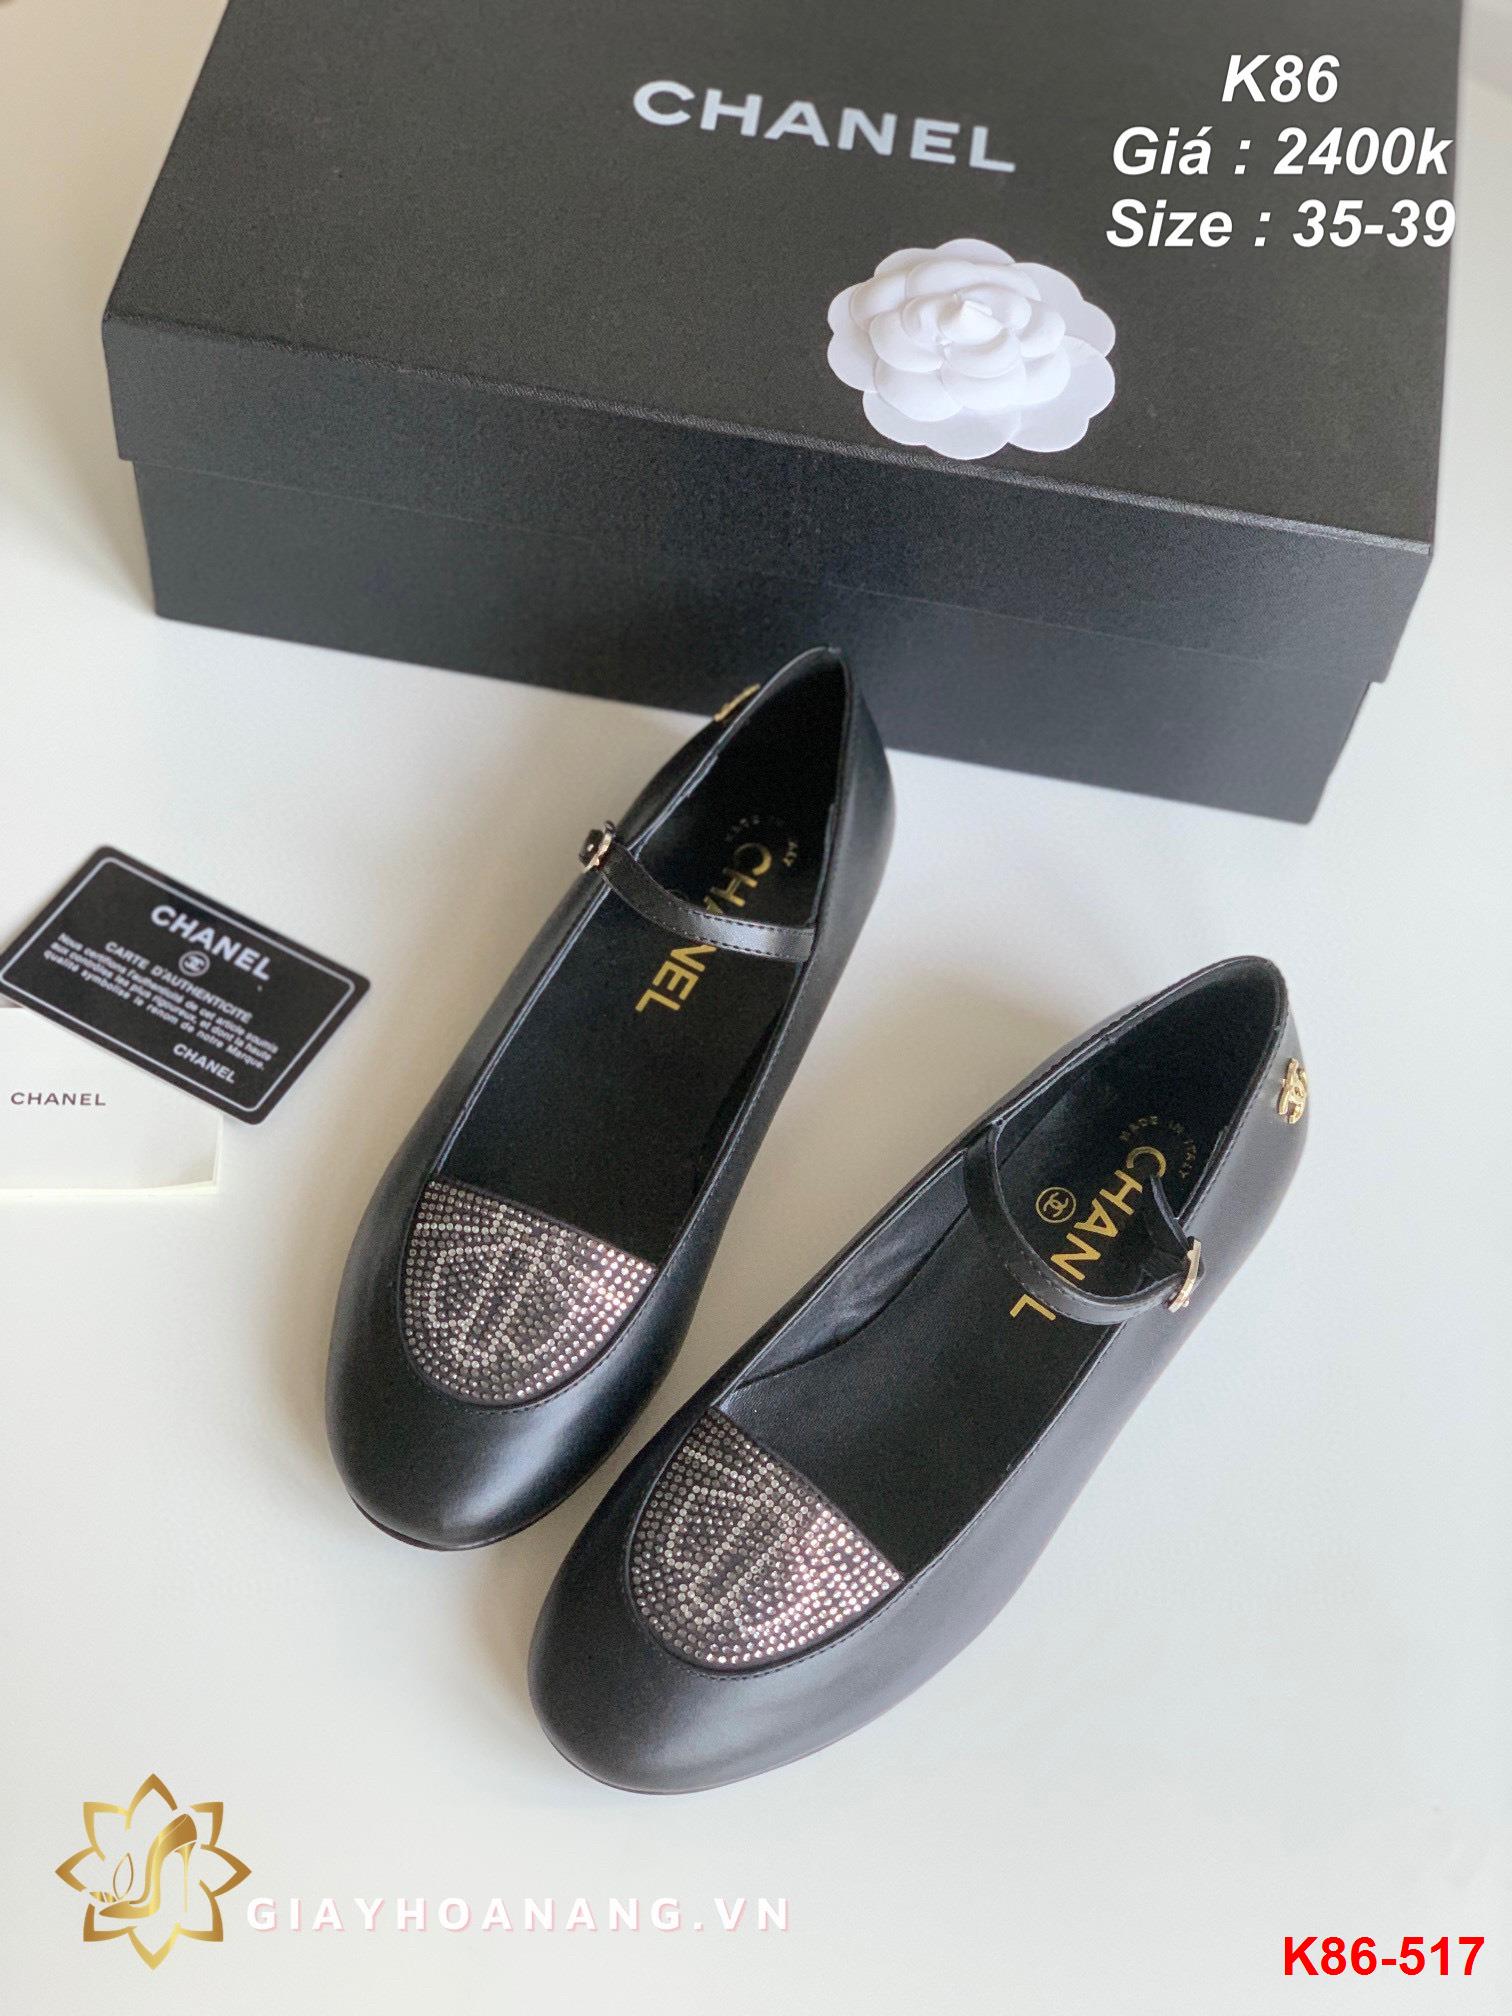 K86-517 Chanel giày bệt siêu cấp